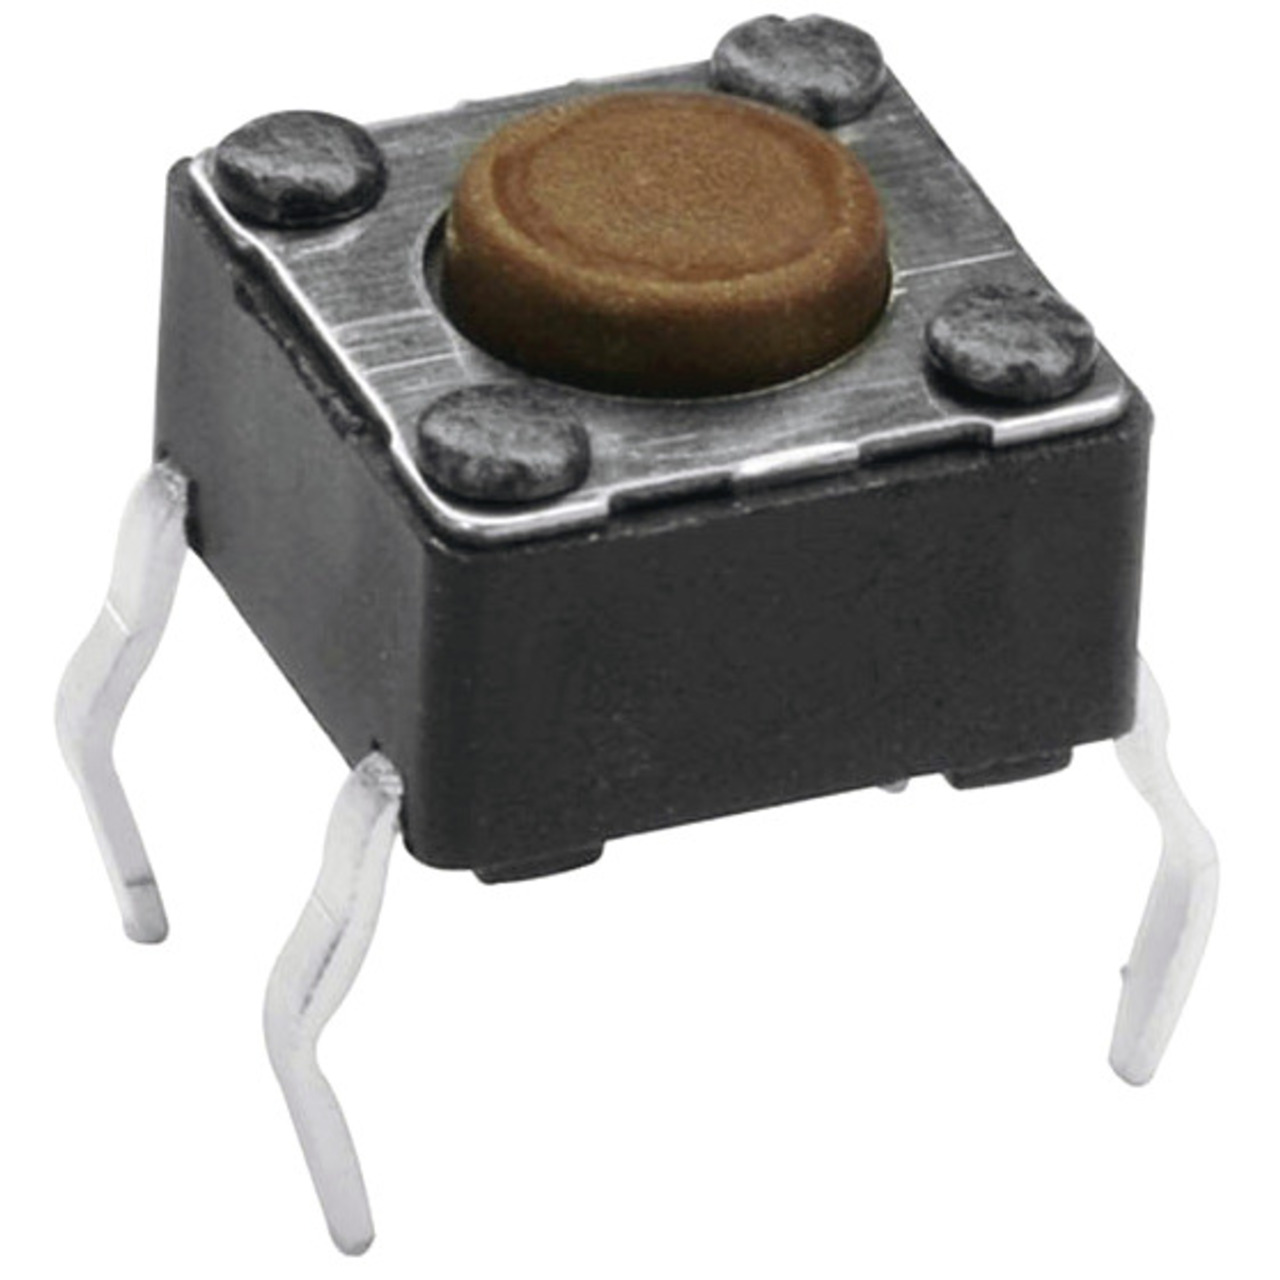 Miniatur-Drucktaster 1x ein- Knopflänge 1-2 mm unter Komponenten